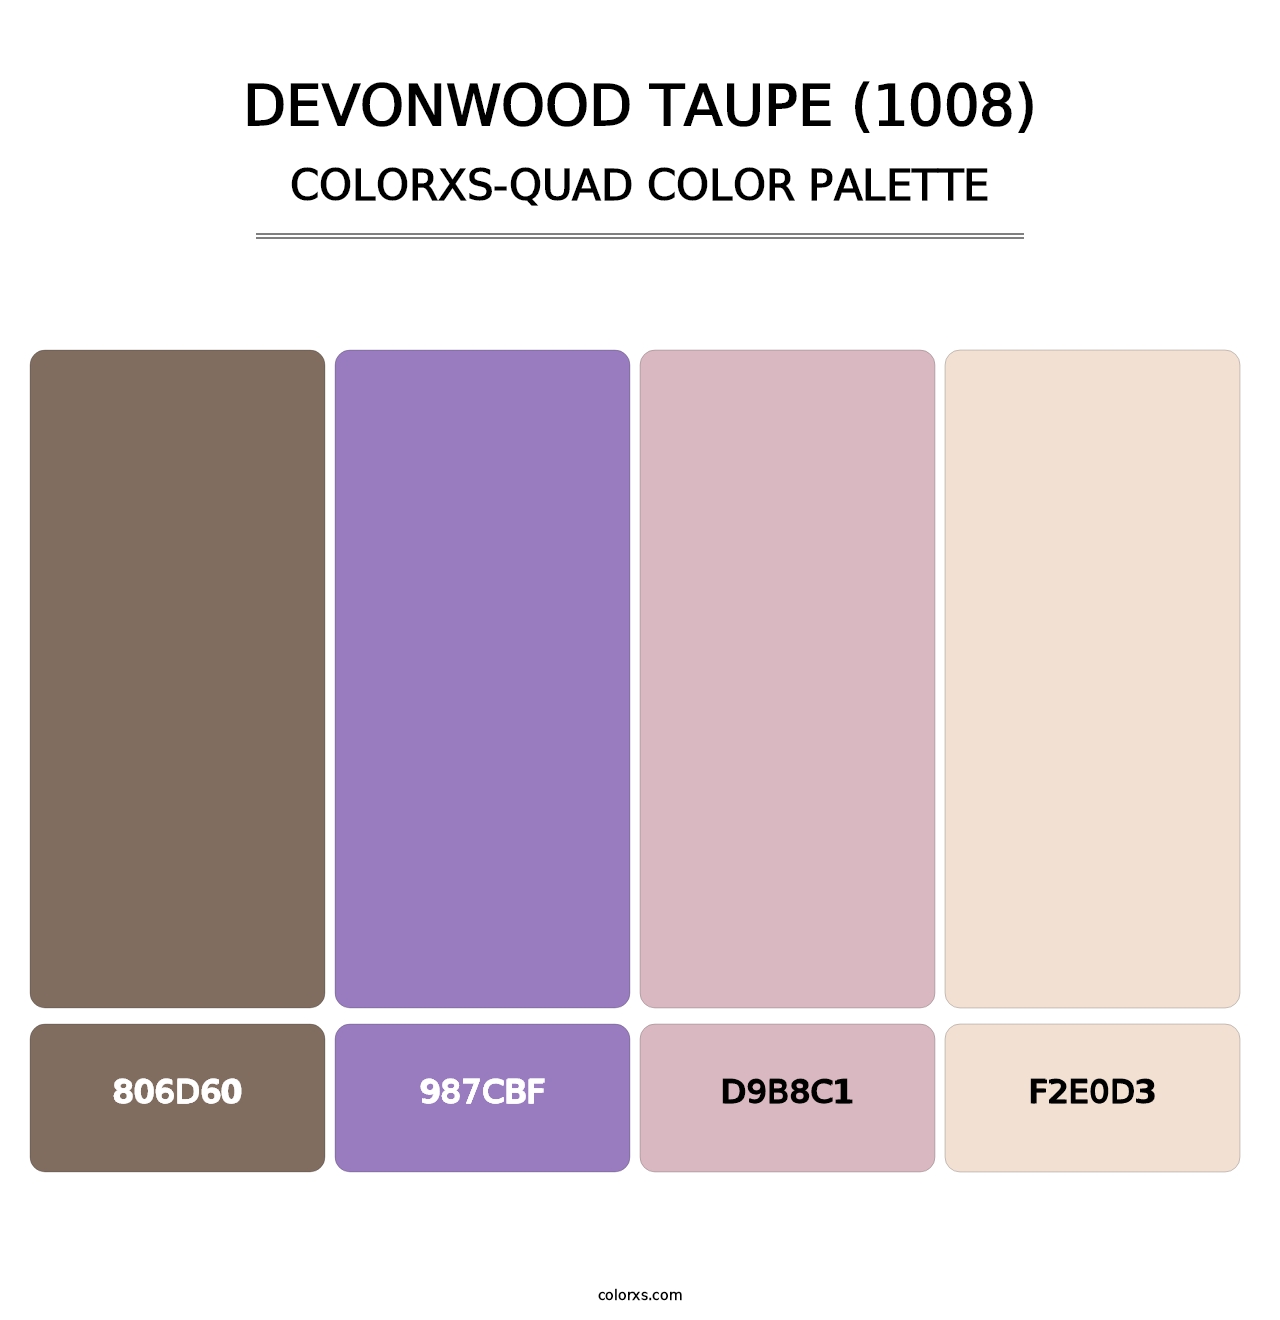 Devonwood Taupe (1008) - Colorxs Quad Palette